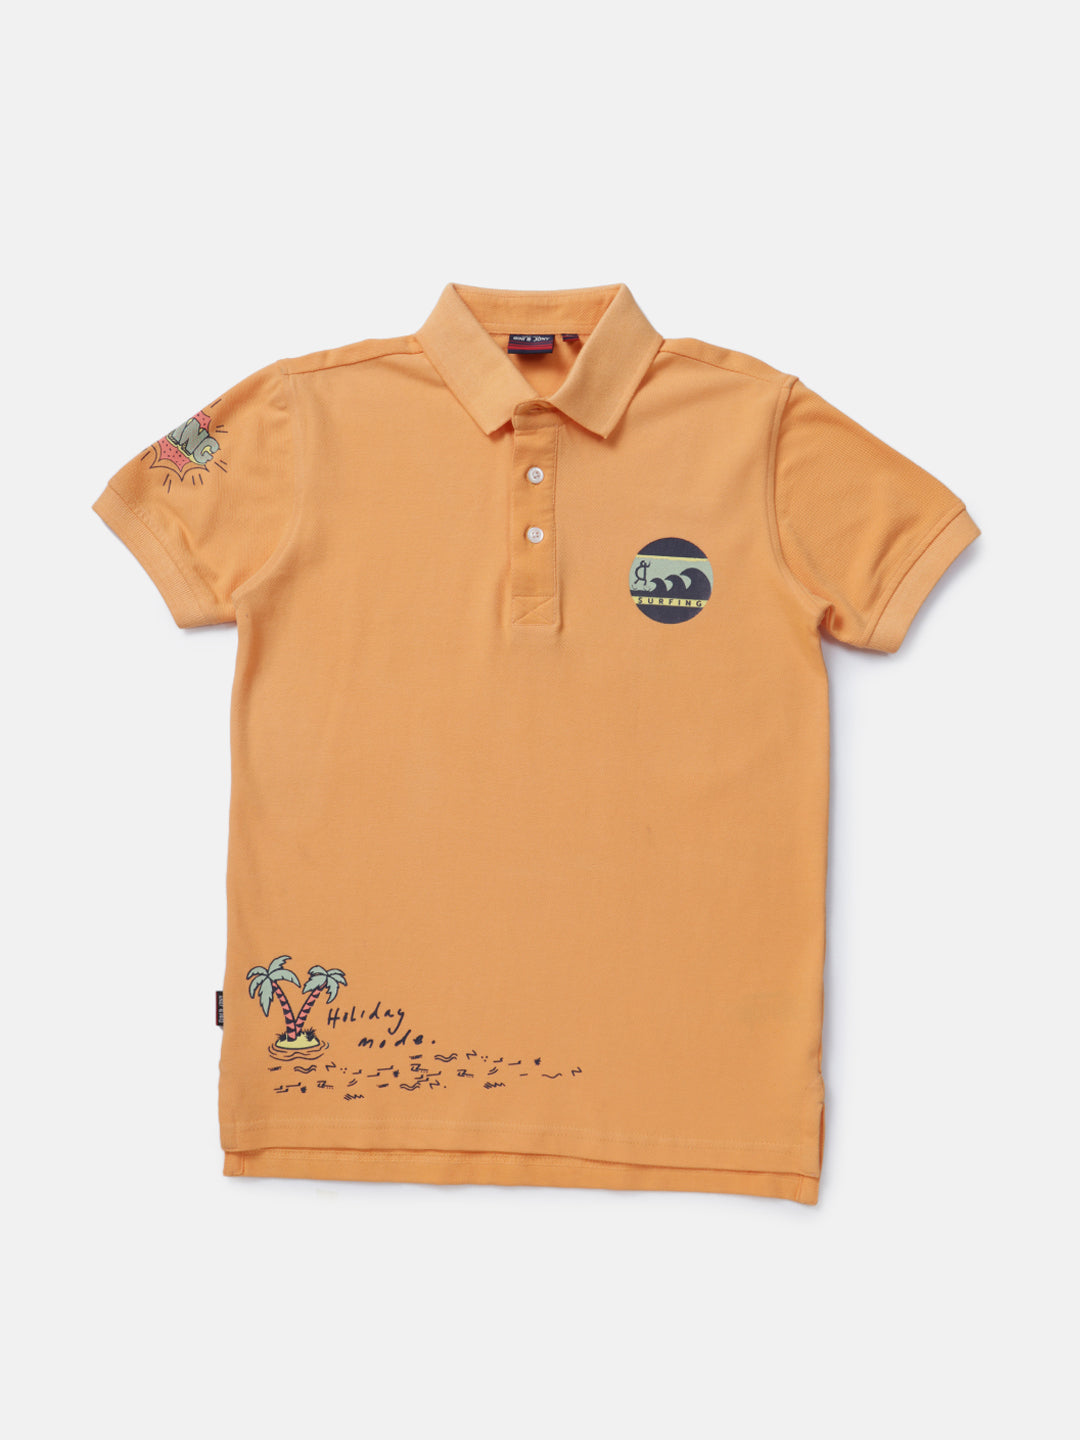 Boys Orange Printed Knits Polo T-Shirt